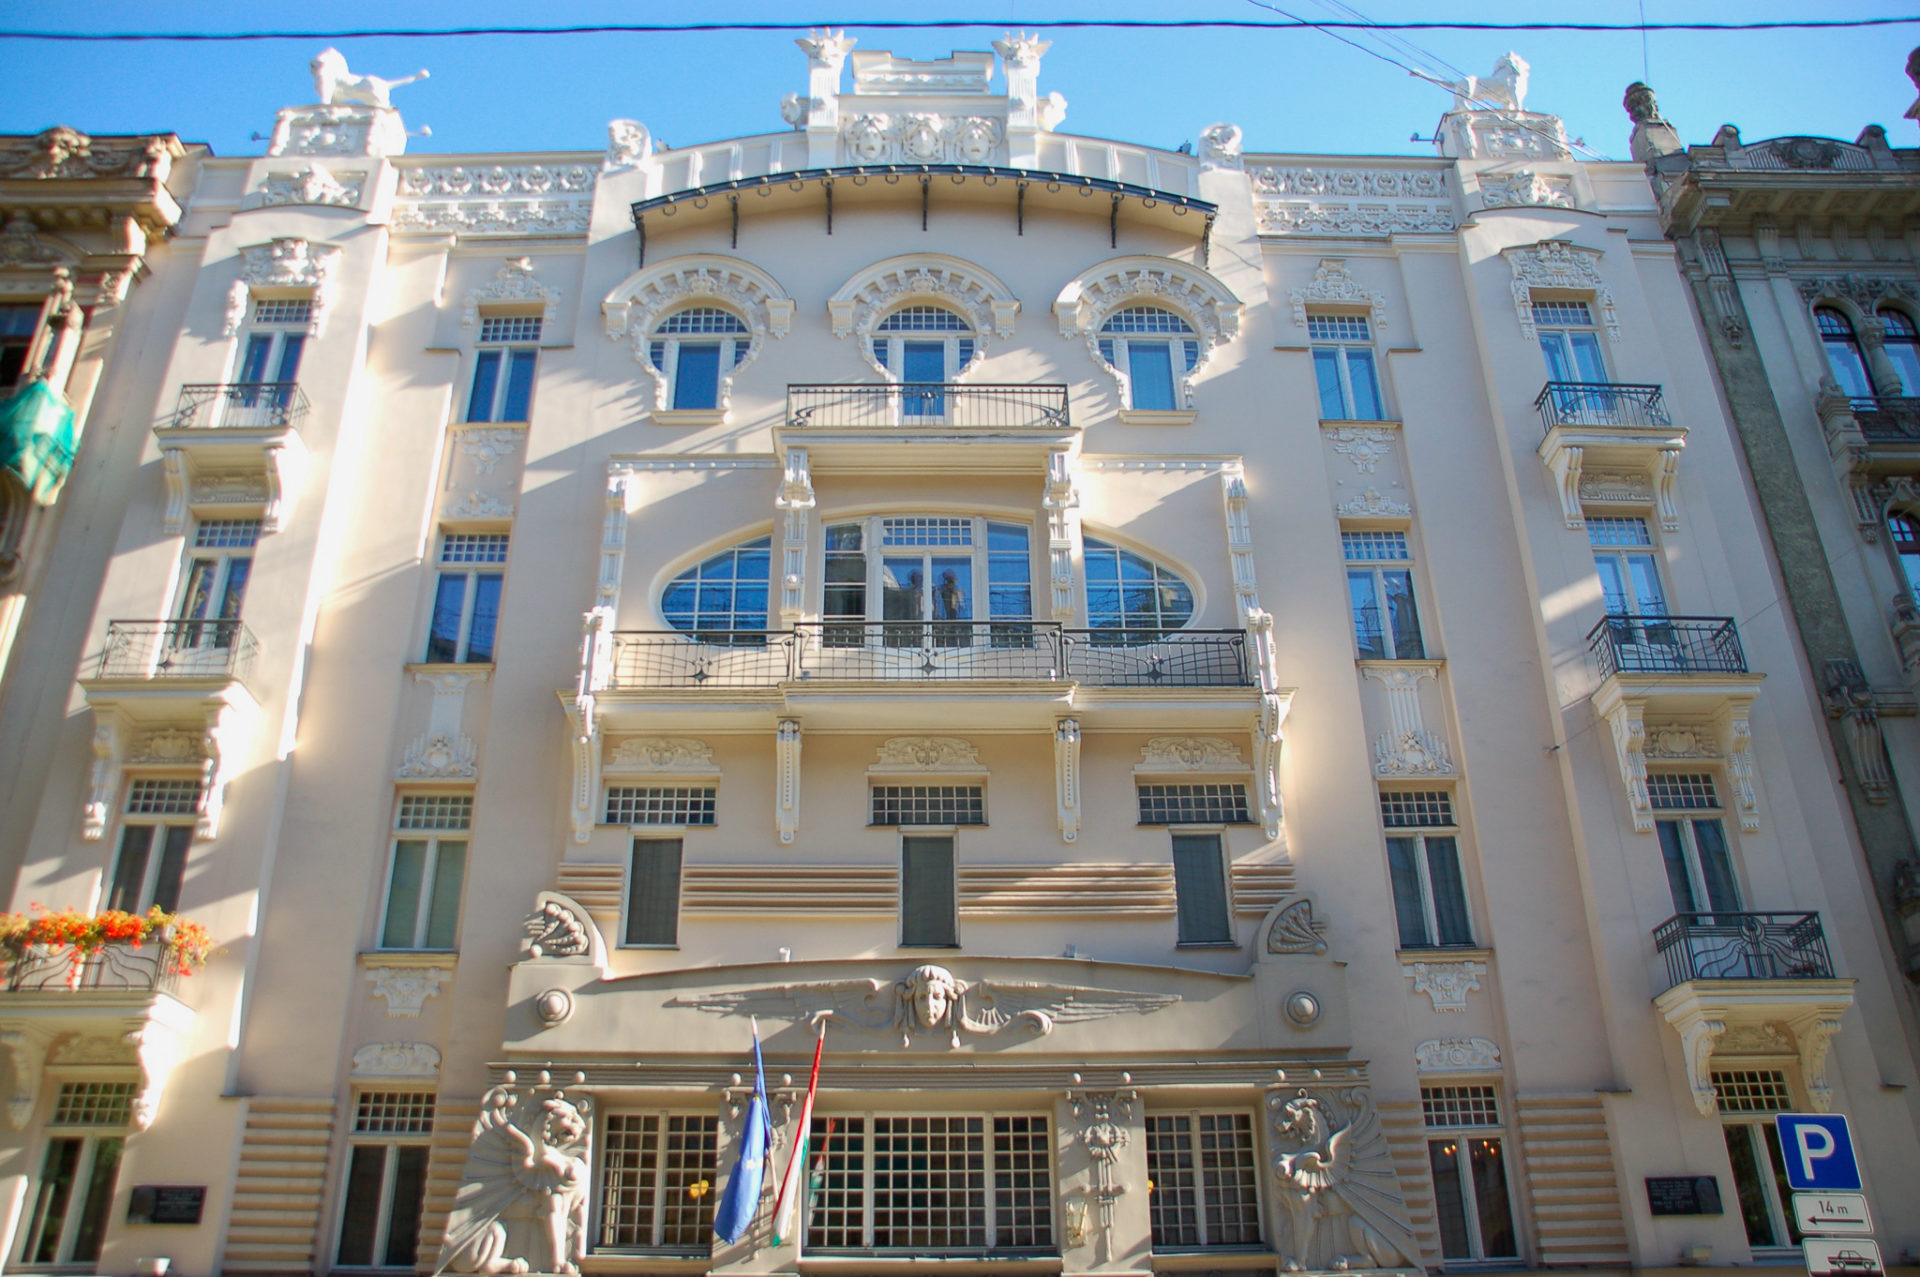 Fassade eines Wohnhauses in Riga, die von Gaudi beeinflusst scheint